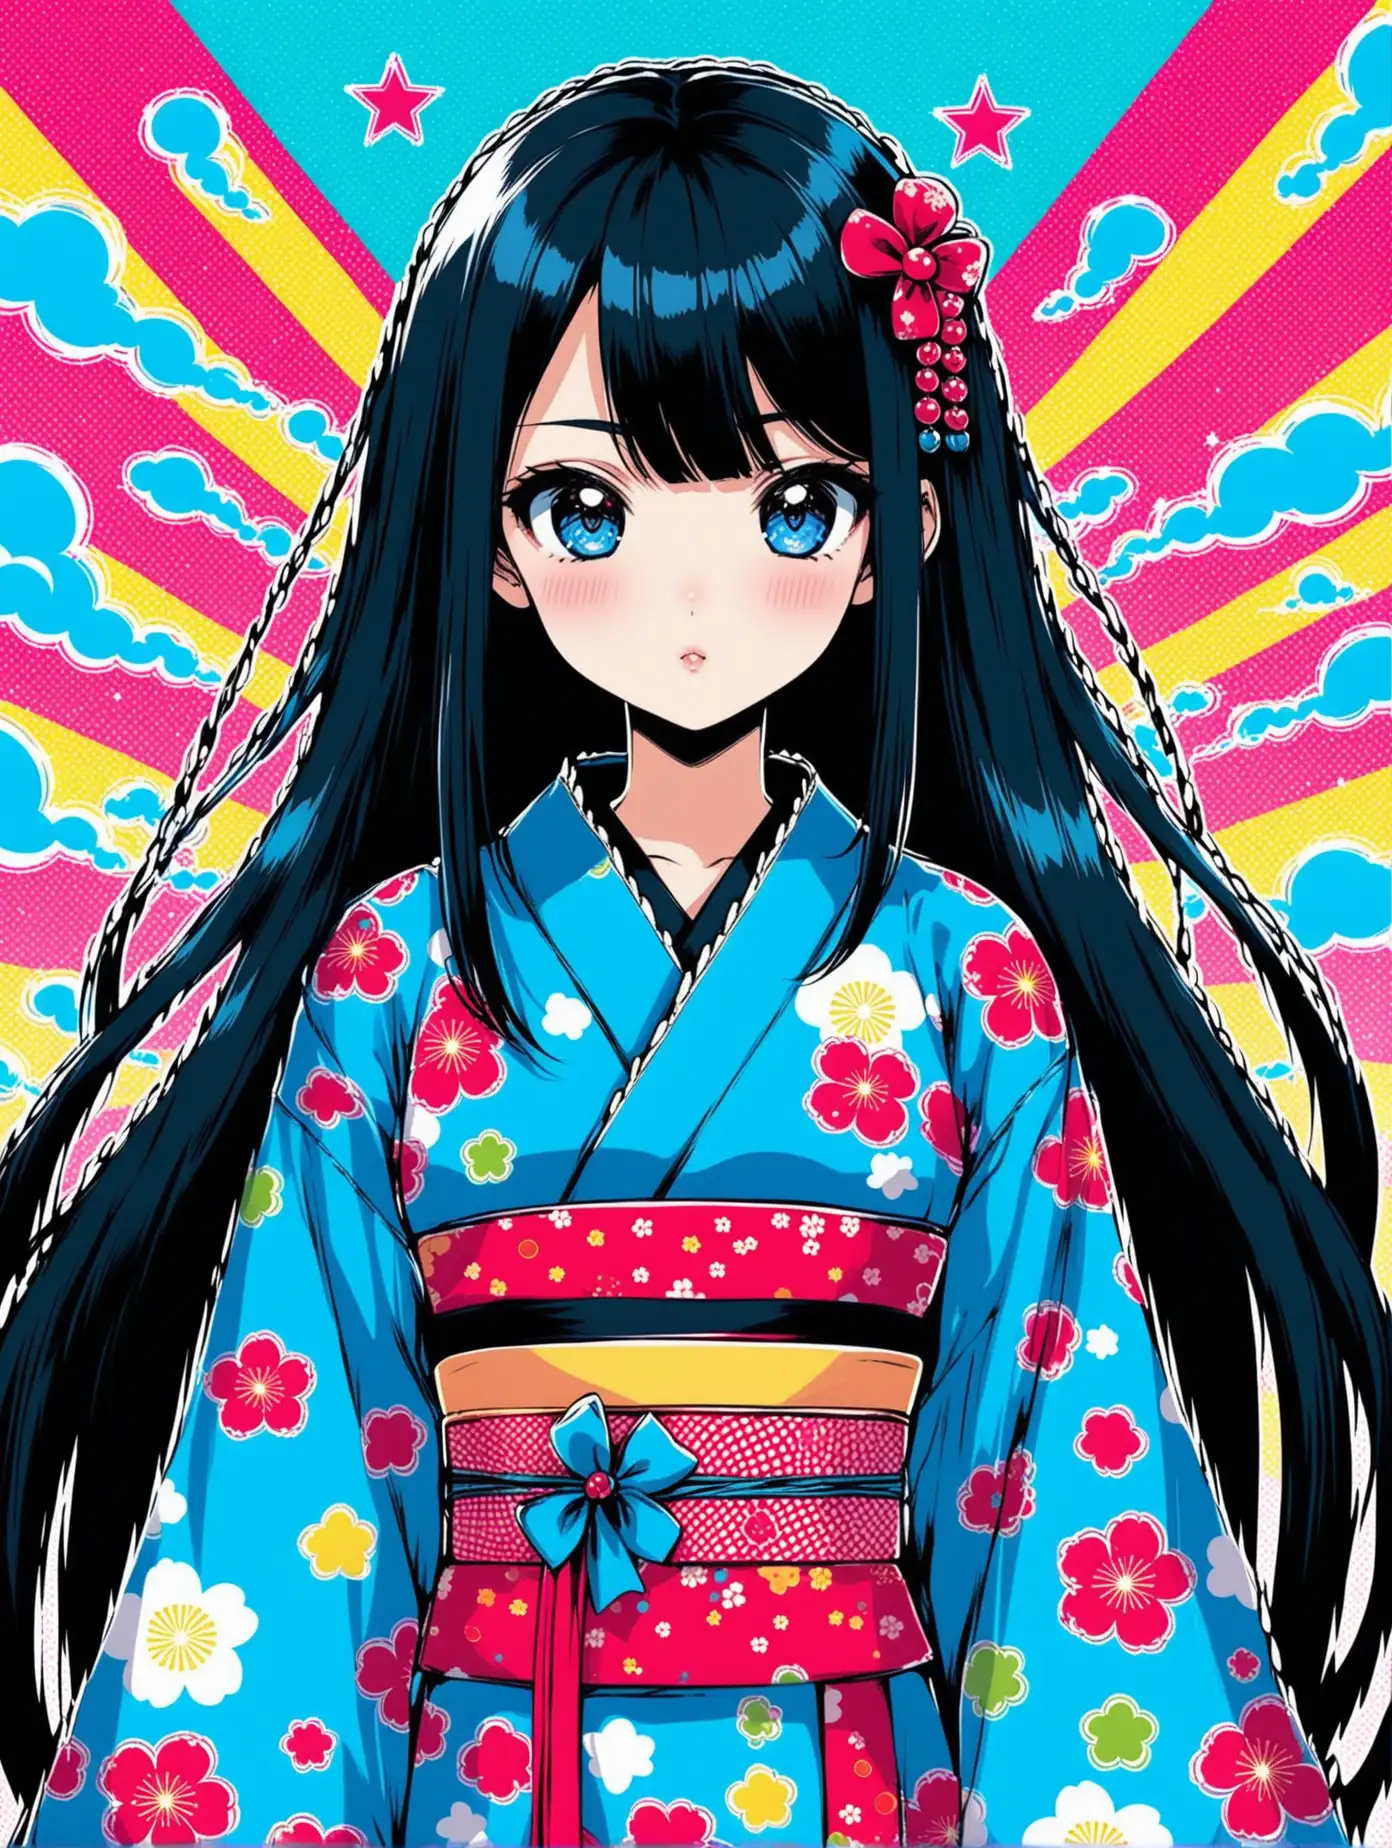 Kawaii Anime Girl with Vibrant Blue and Black Colors